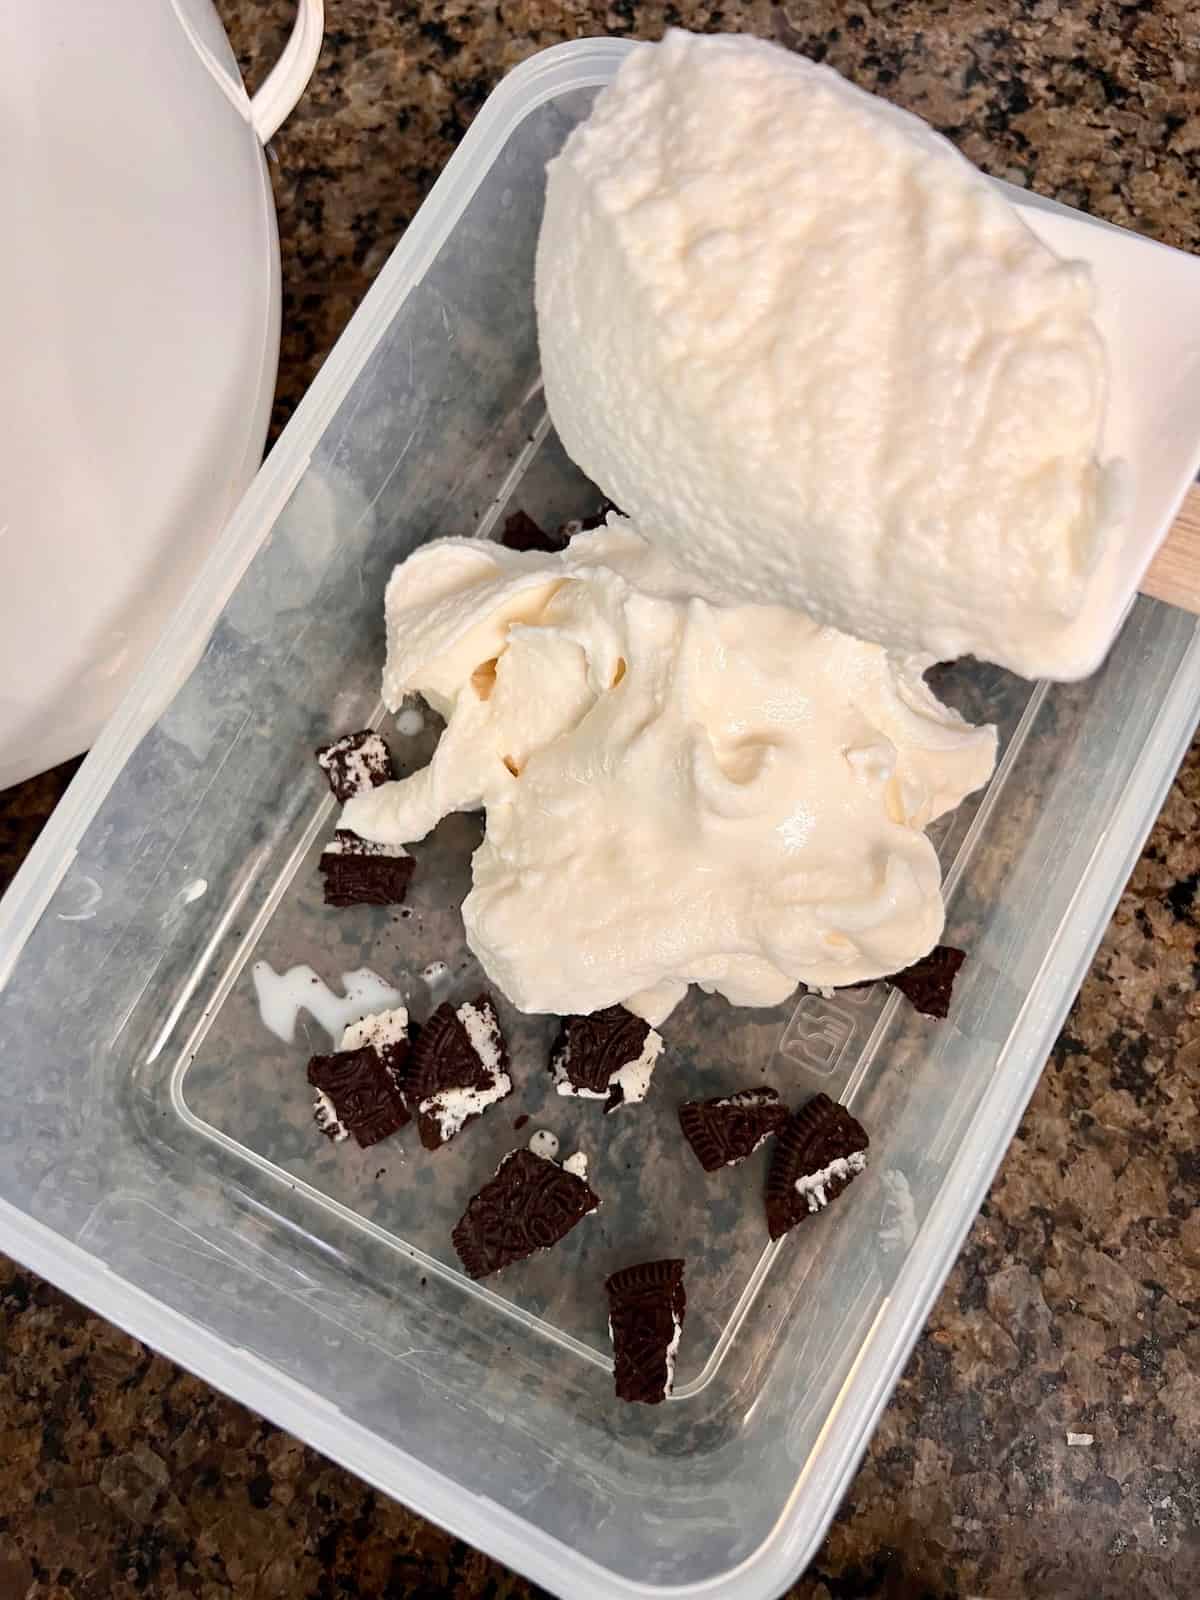 Oreo Cookies & Cream Ice Cream Adding vanilla ice cream over Oreo pieces in the container.